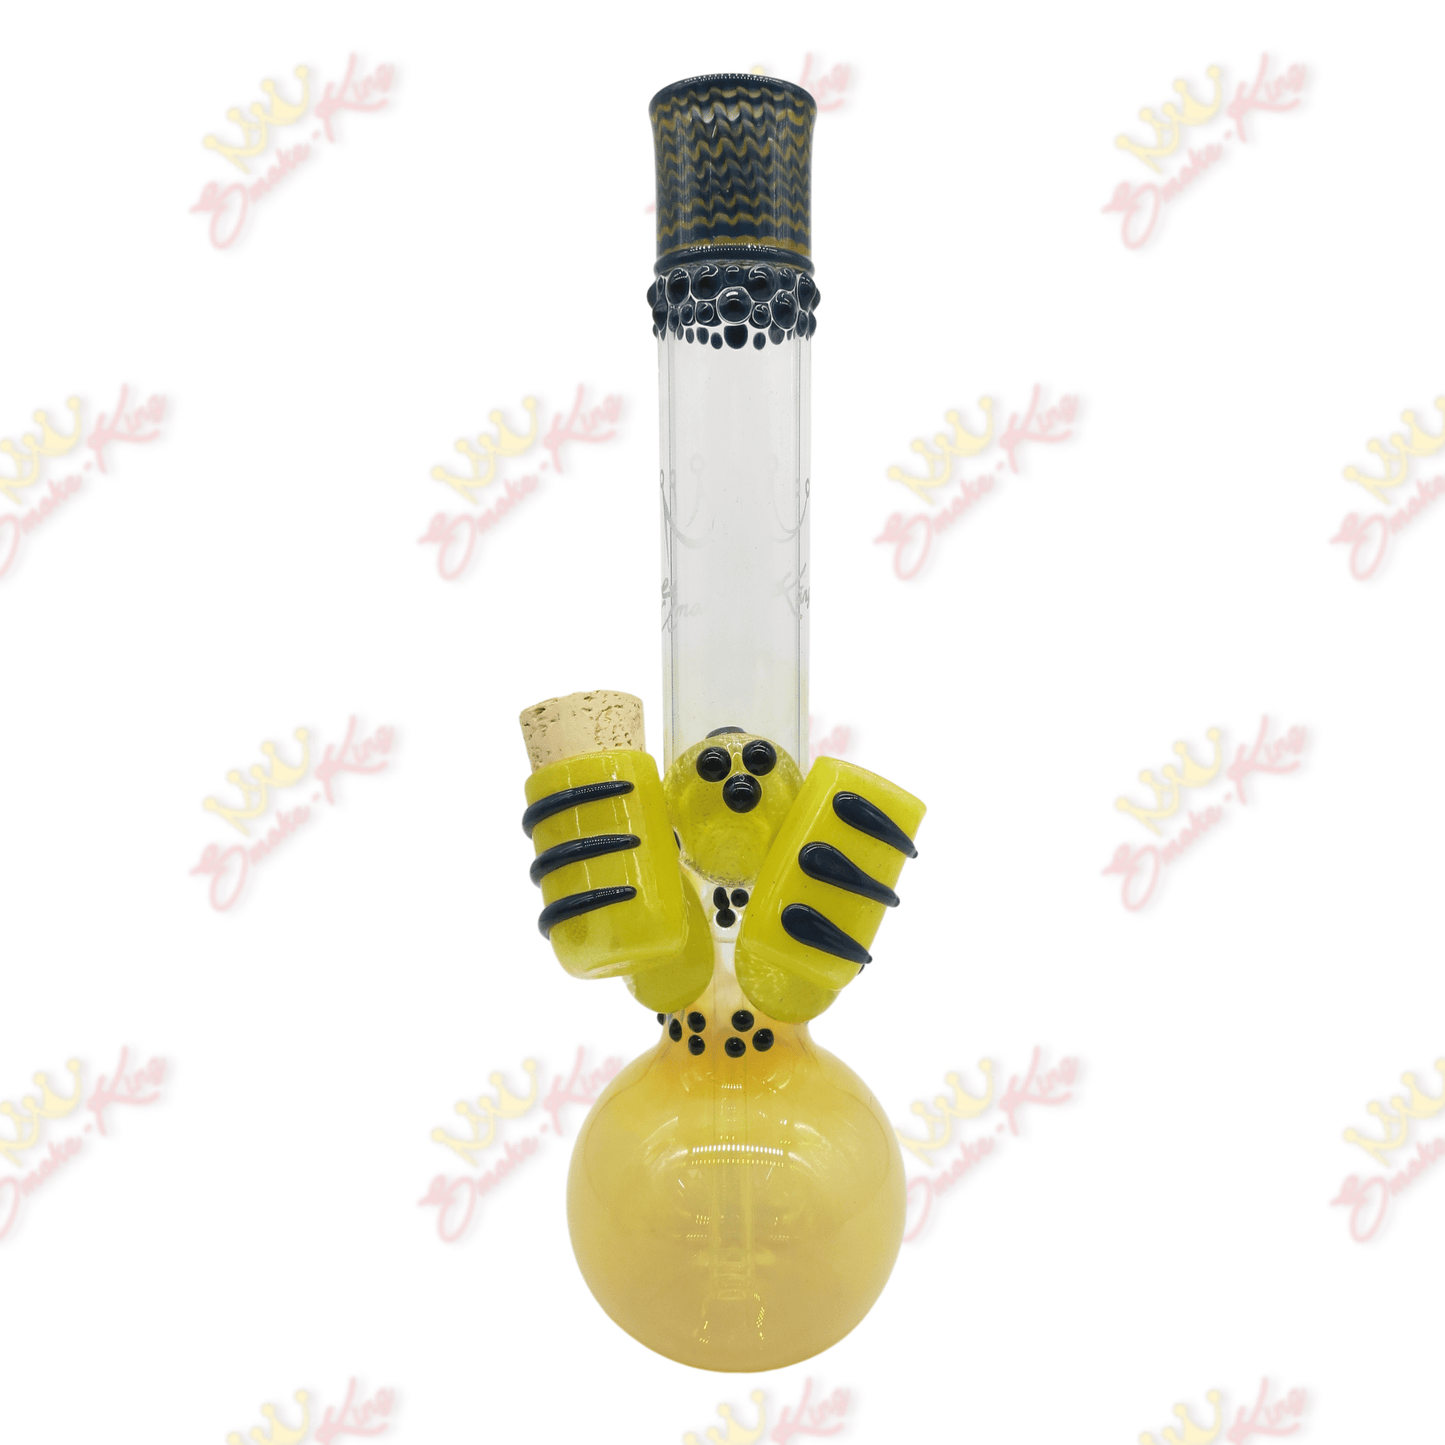 15" Inch Bong w/ yellow stash and lighter jar - Smoke King